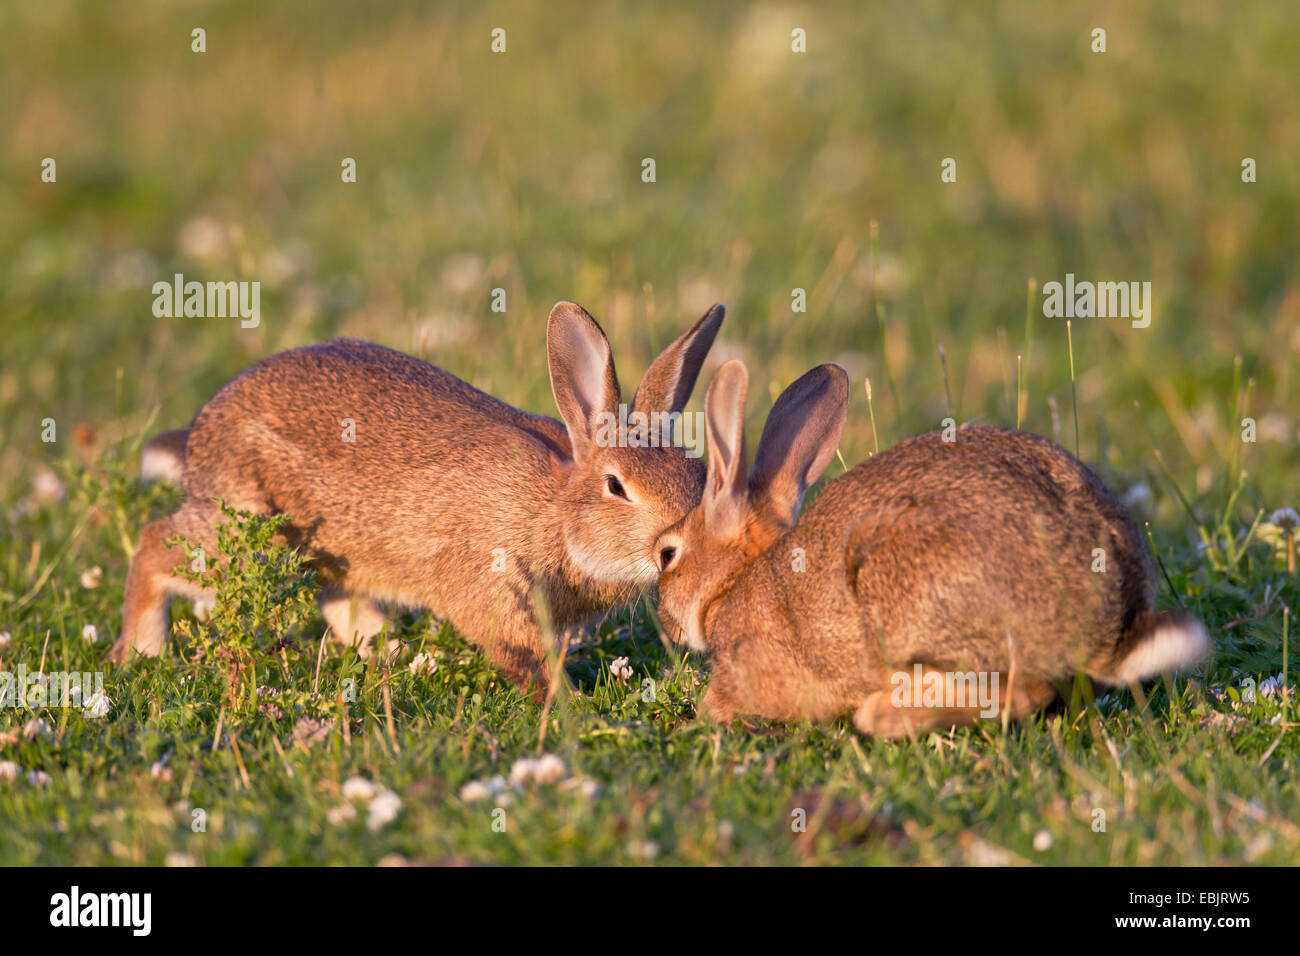 Lapin de garenne (Oryctolagus cuniculus), deux jeunes lapins à jouer ensemble dans un pré, Allemagne, Schleswig-Holstein Banque D'Images